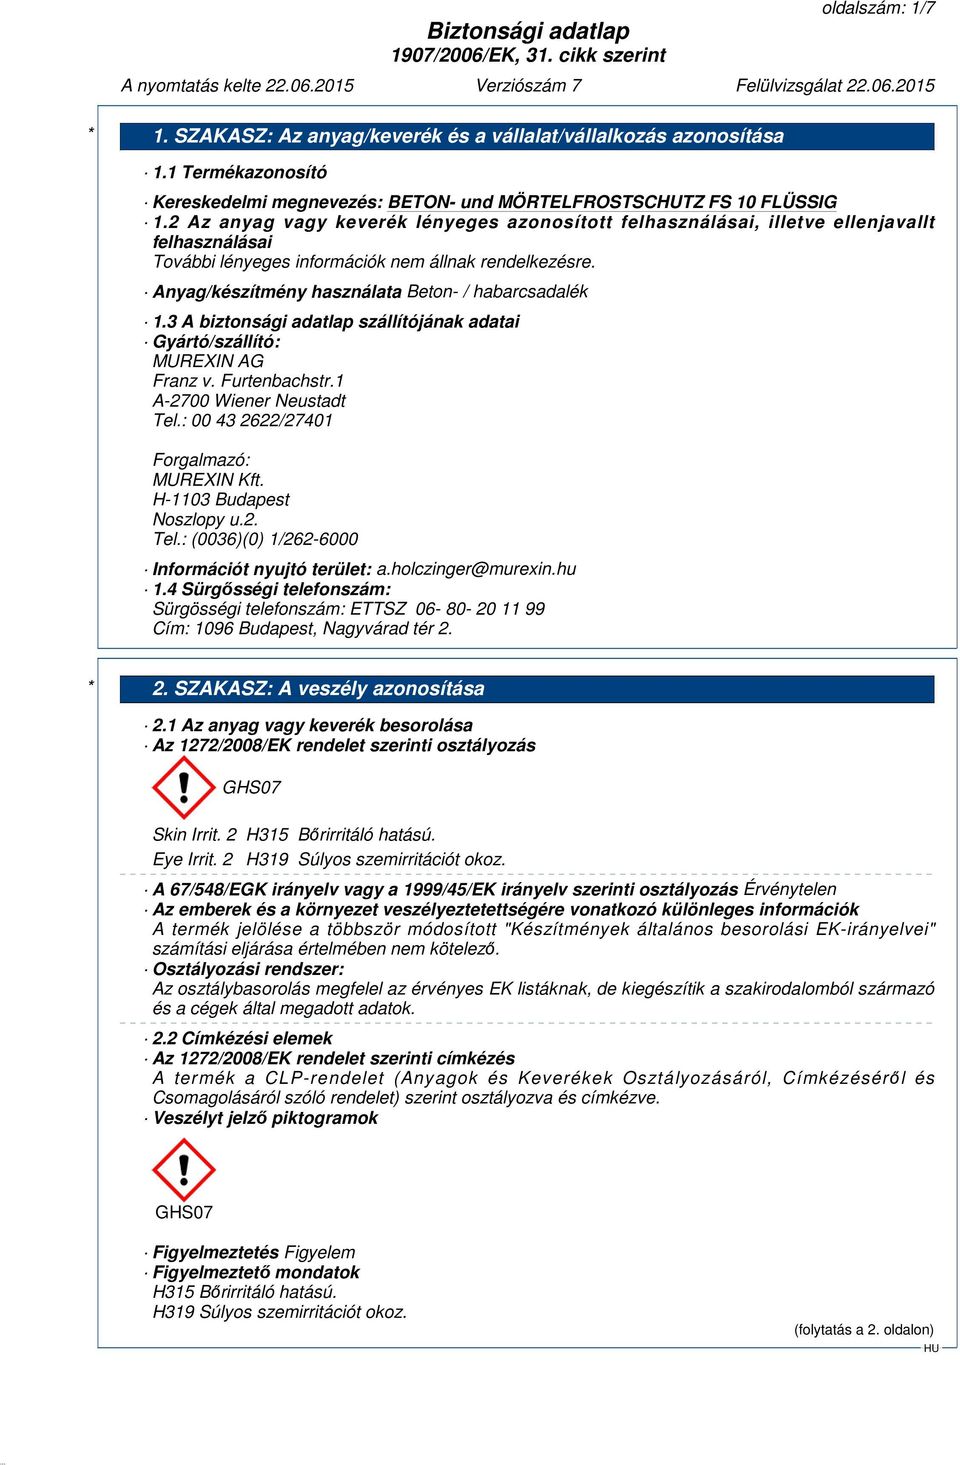 3 A biztonsági adatlap szállítójának adatai Gyártó/szállító: MUREXIN AG Franz v. Furtenbachstr.1 A-2700 Wiener Neustadt Tel.: 00 43 2622/27401 Forgalmazó: MUREXIN Kft. H-1103 Budapest Noszlopy u.2. Tel.: (0036)(0) 1/262-6000 Információt nyujtó terület: a.